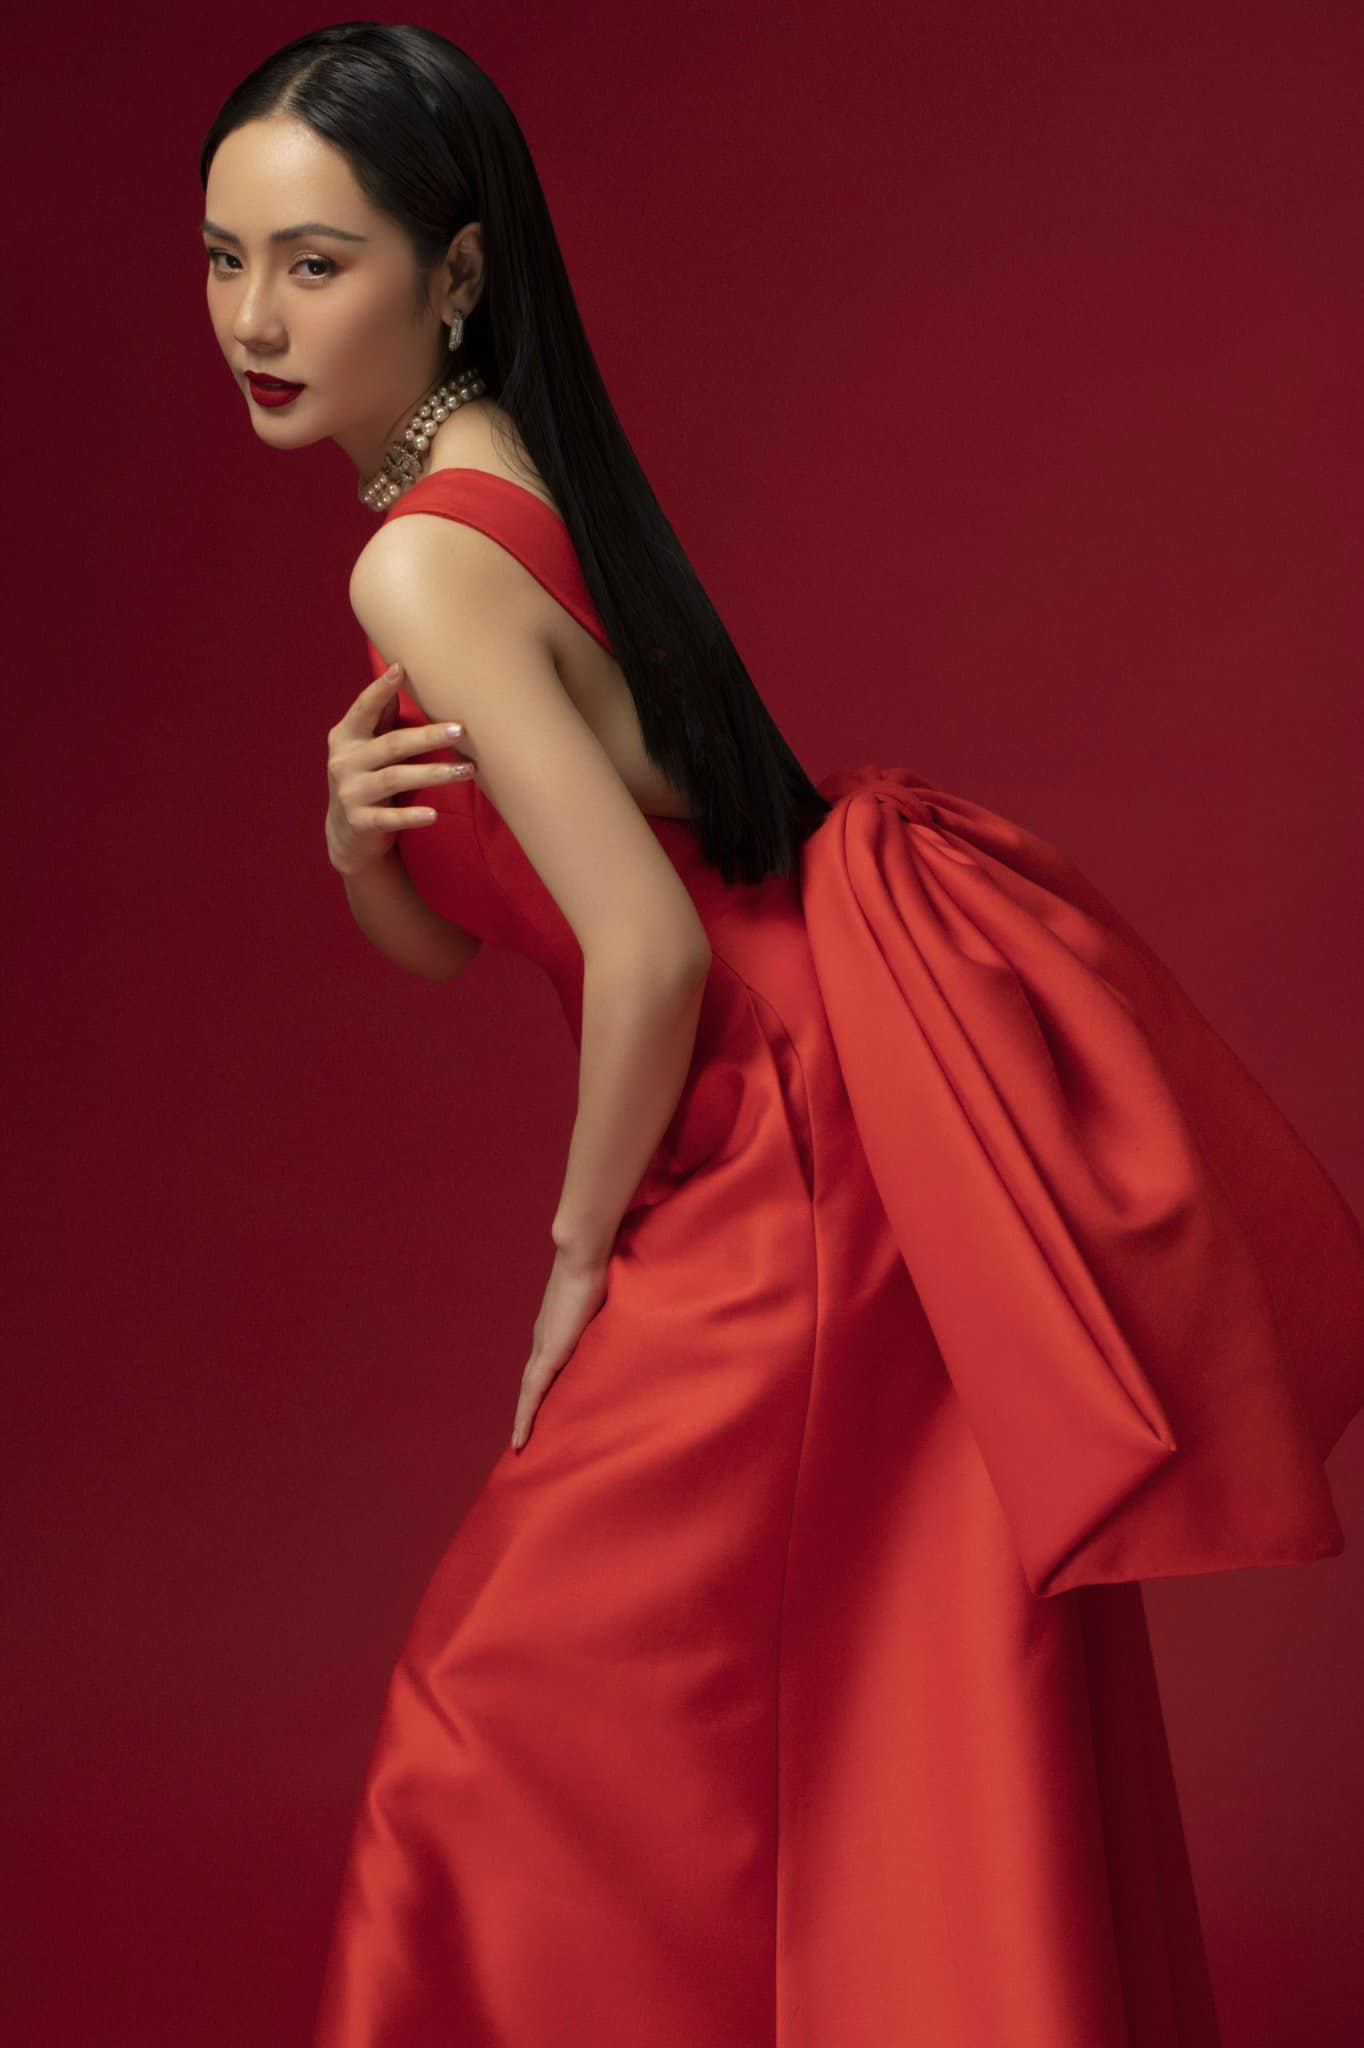 Phương Linh là một trong những giọng ca nữ ngọt ngào nhưng đầy nội lực, kỹ thuật nhưng vẫn đầy tình cảm.